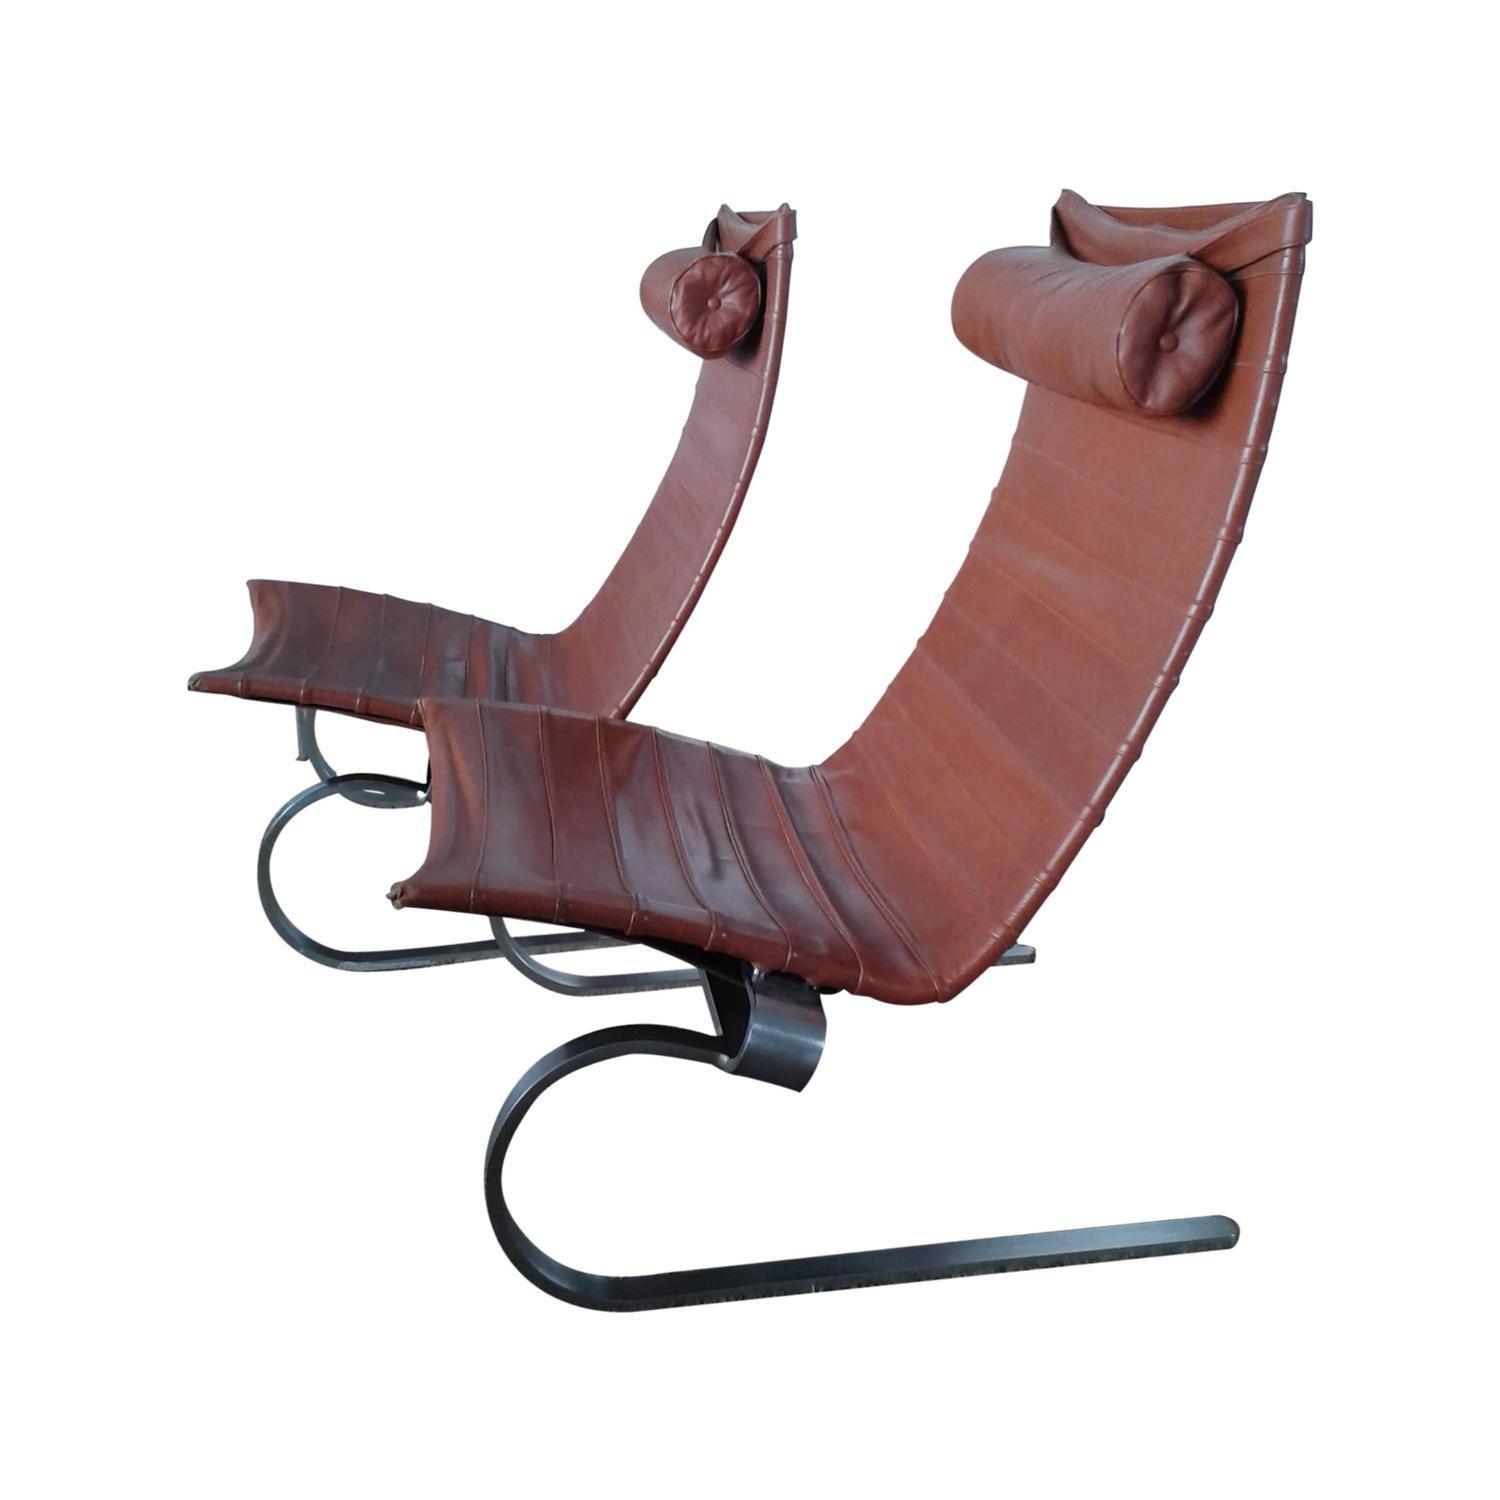 PK 20 ist ein lässiger und eleganter Loungesessel aus Originalleder, der auf einem flexiblen, matt verchromten Federstahlgestell aufgebaut ist. Die schöne Kurve der Beine und der schwebende Rahmen zeichnen diesen Stuhl aus. Signiert mit eingeprägtem